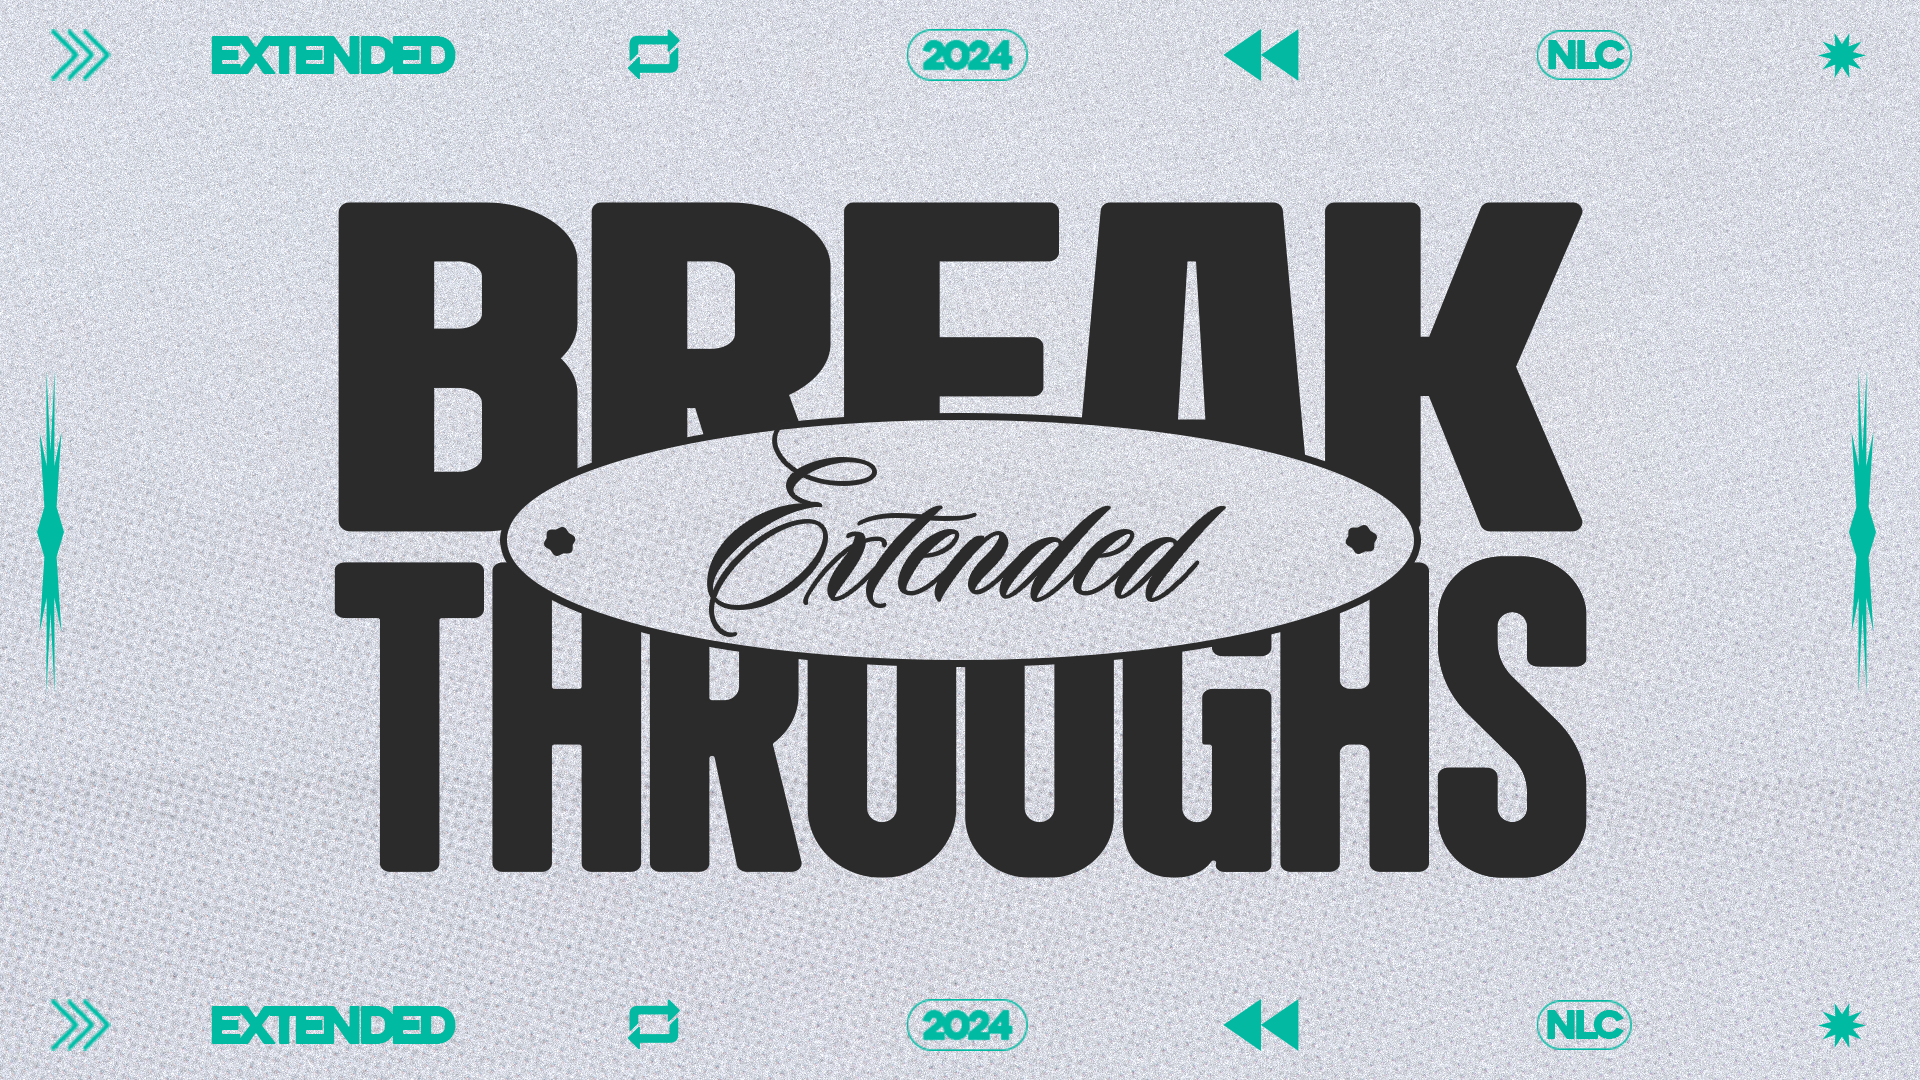 2024: Breakthroughs Extended